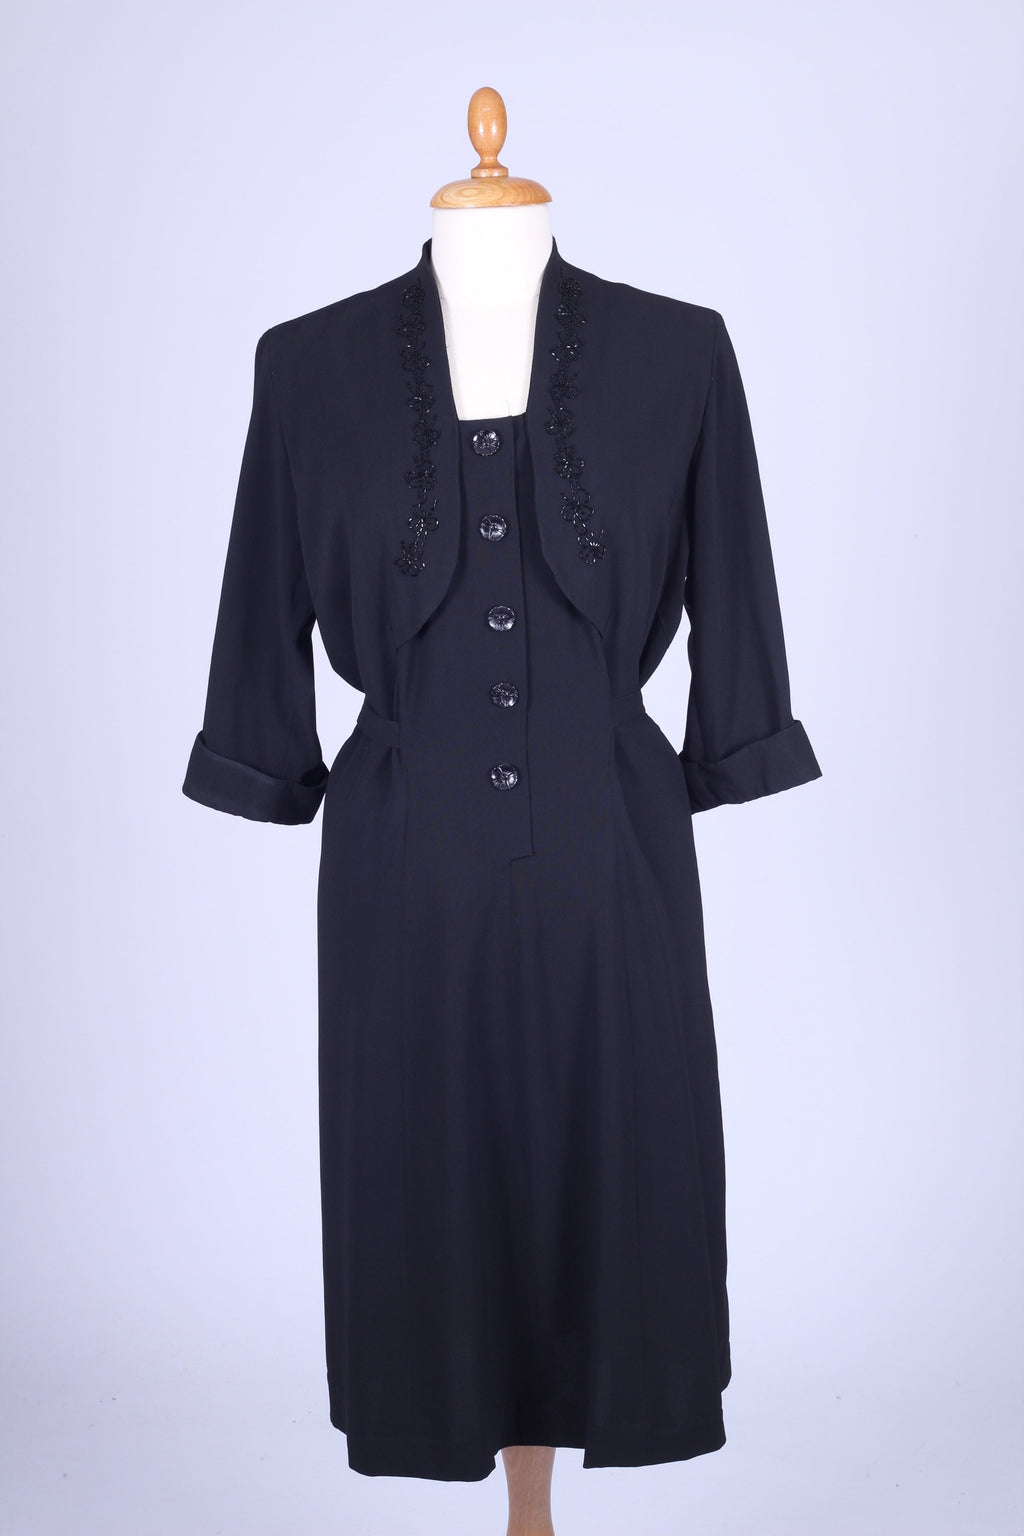 Sort kjole med perlebroderi 1940. L-XL